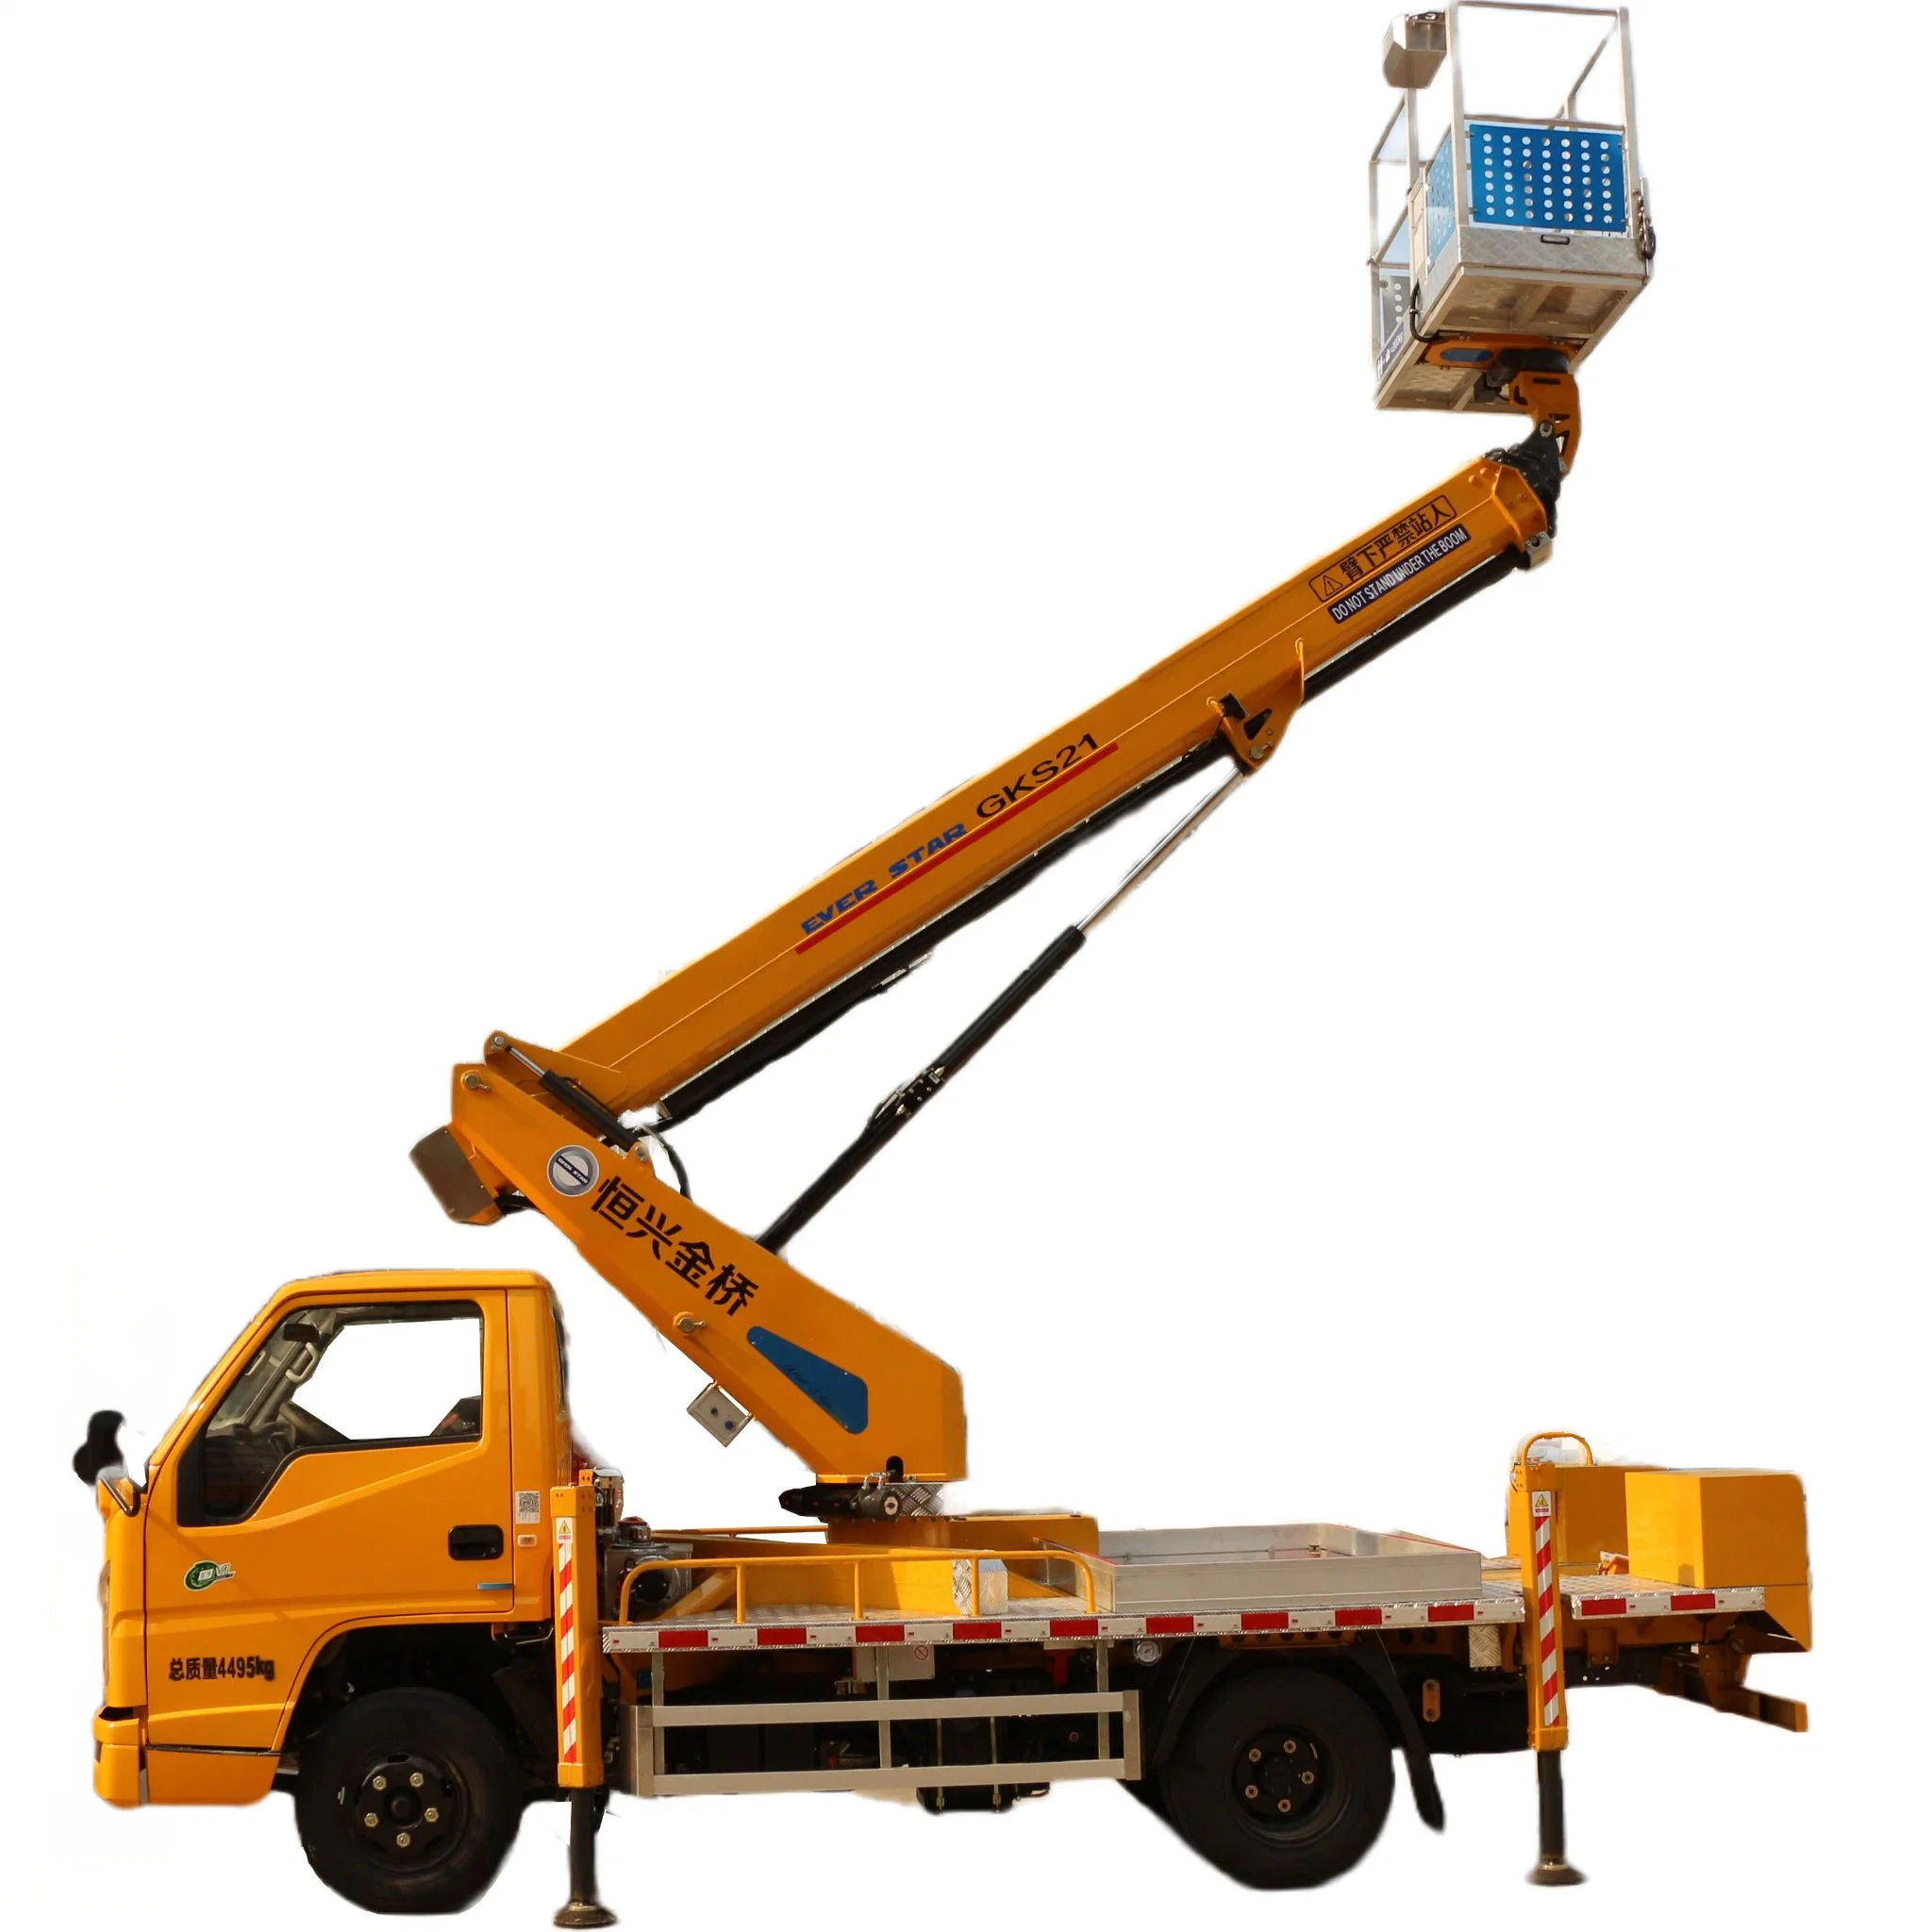 EverStar Truck für Straßenbeleuchtung Aerial Work Platform Operation Truck Mit Gelenkauslegern